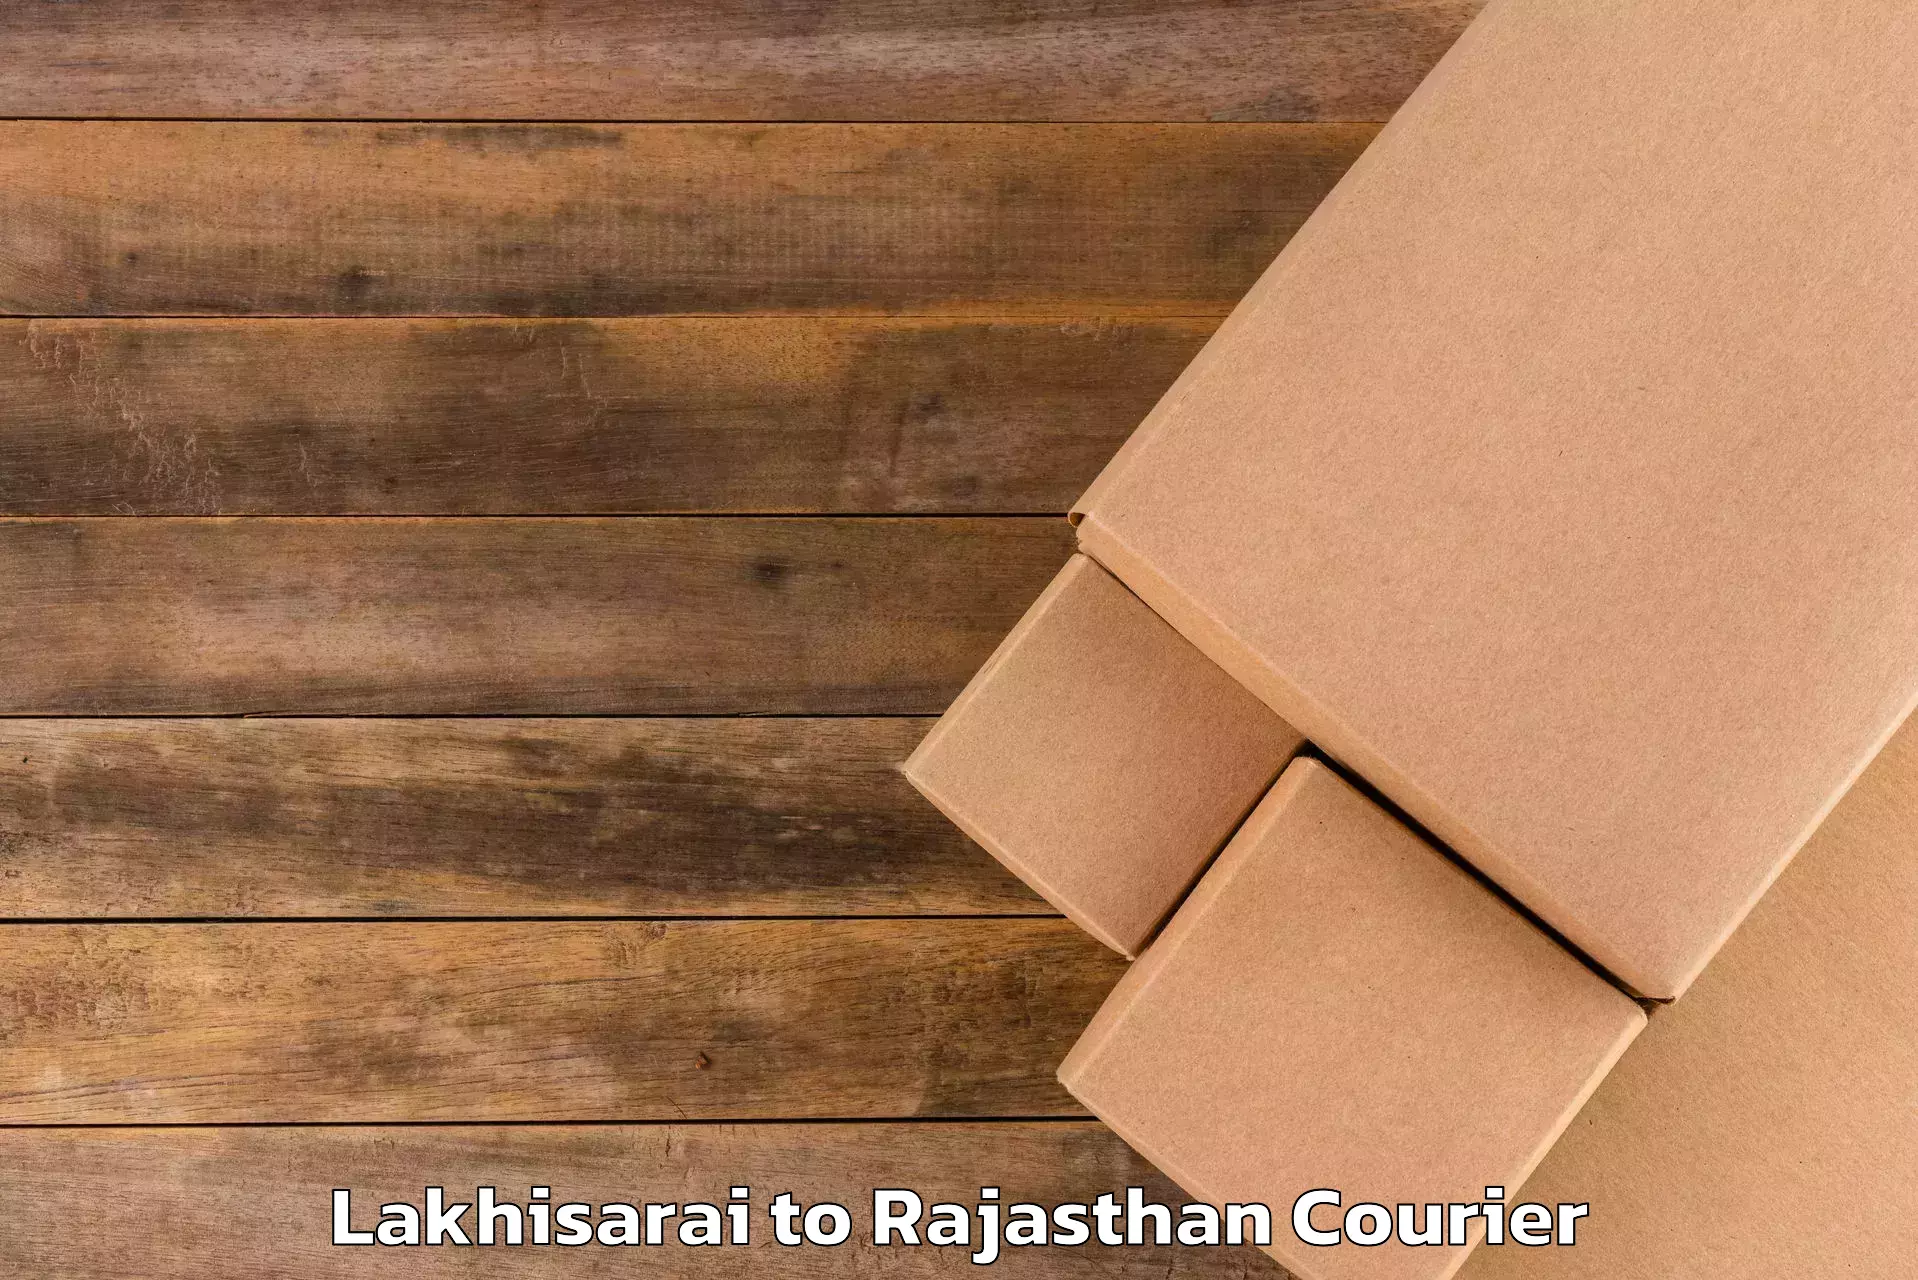 Luggage transport service Lakhisarai to Rajasthan